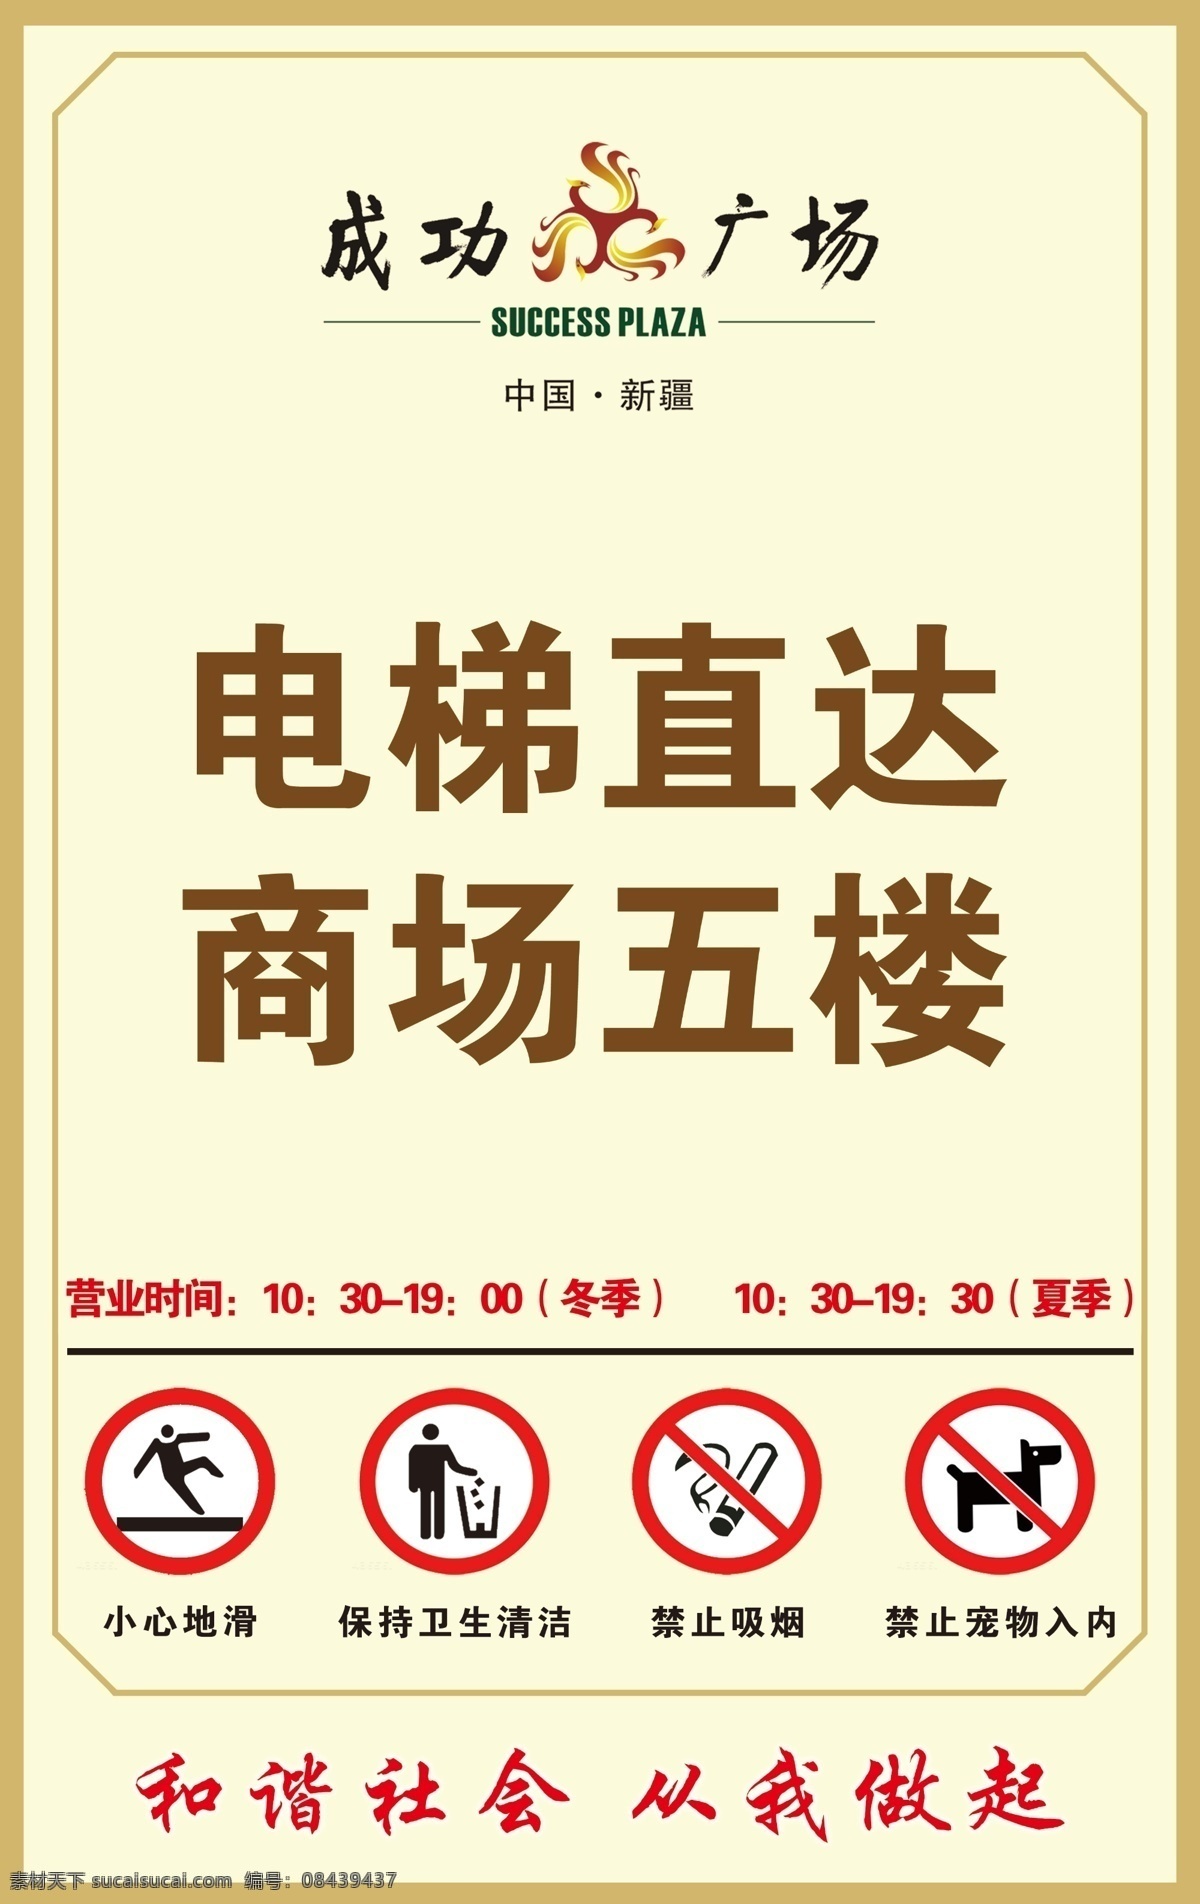 商场入口 电梯 小心地滑 禁止吸烟 禁止带宠物 保持卫生清洁 营业时间 广告设计模板 源文件